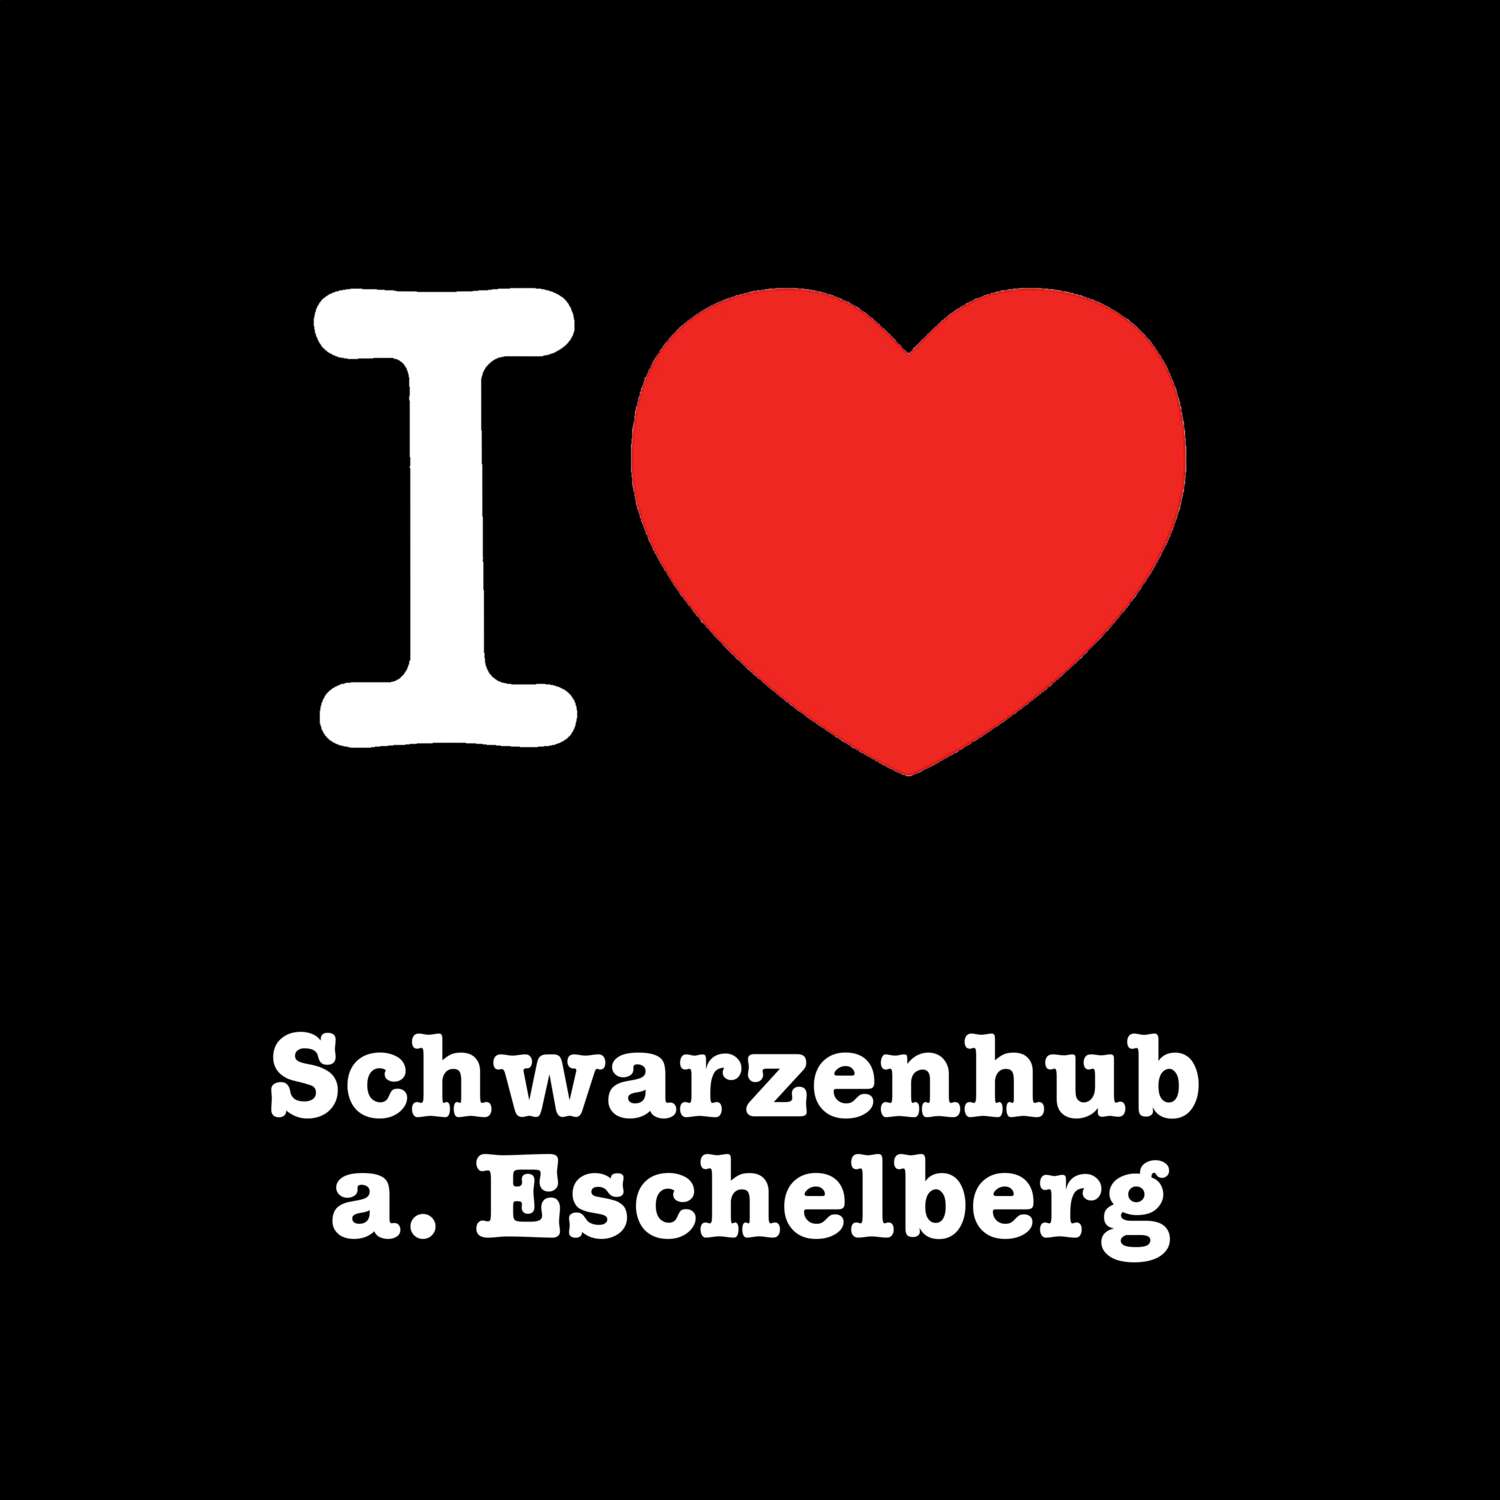 Schwarzenhub a. Eschelberg T-Shirt »I love«